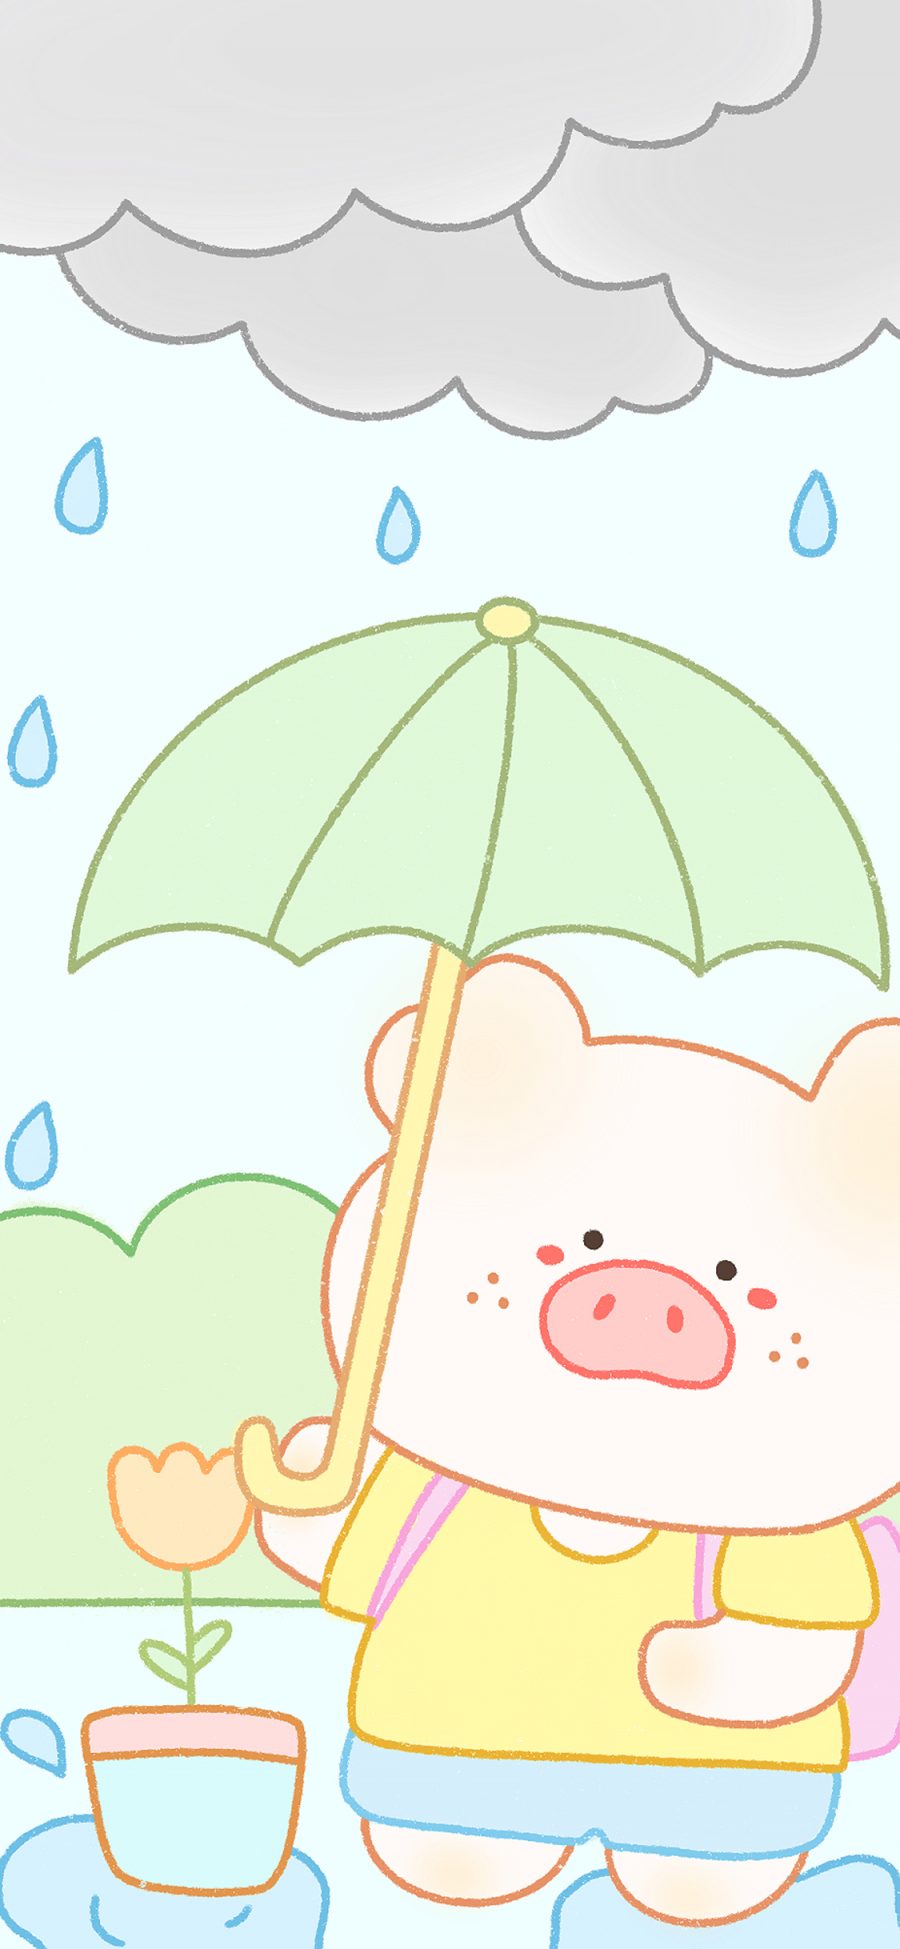 [2436×1125]猪 可爱 卡通 雨滴 苹果手机动漫壁纸图片